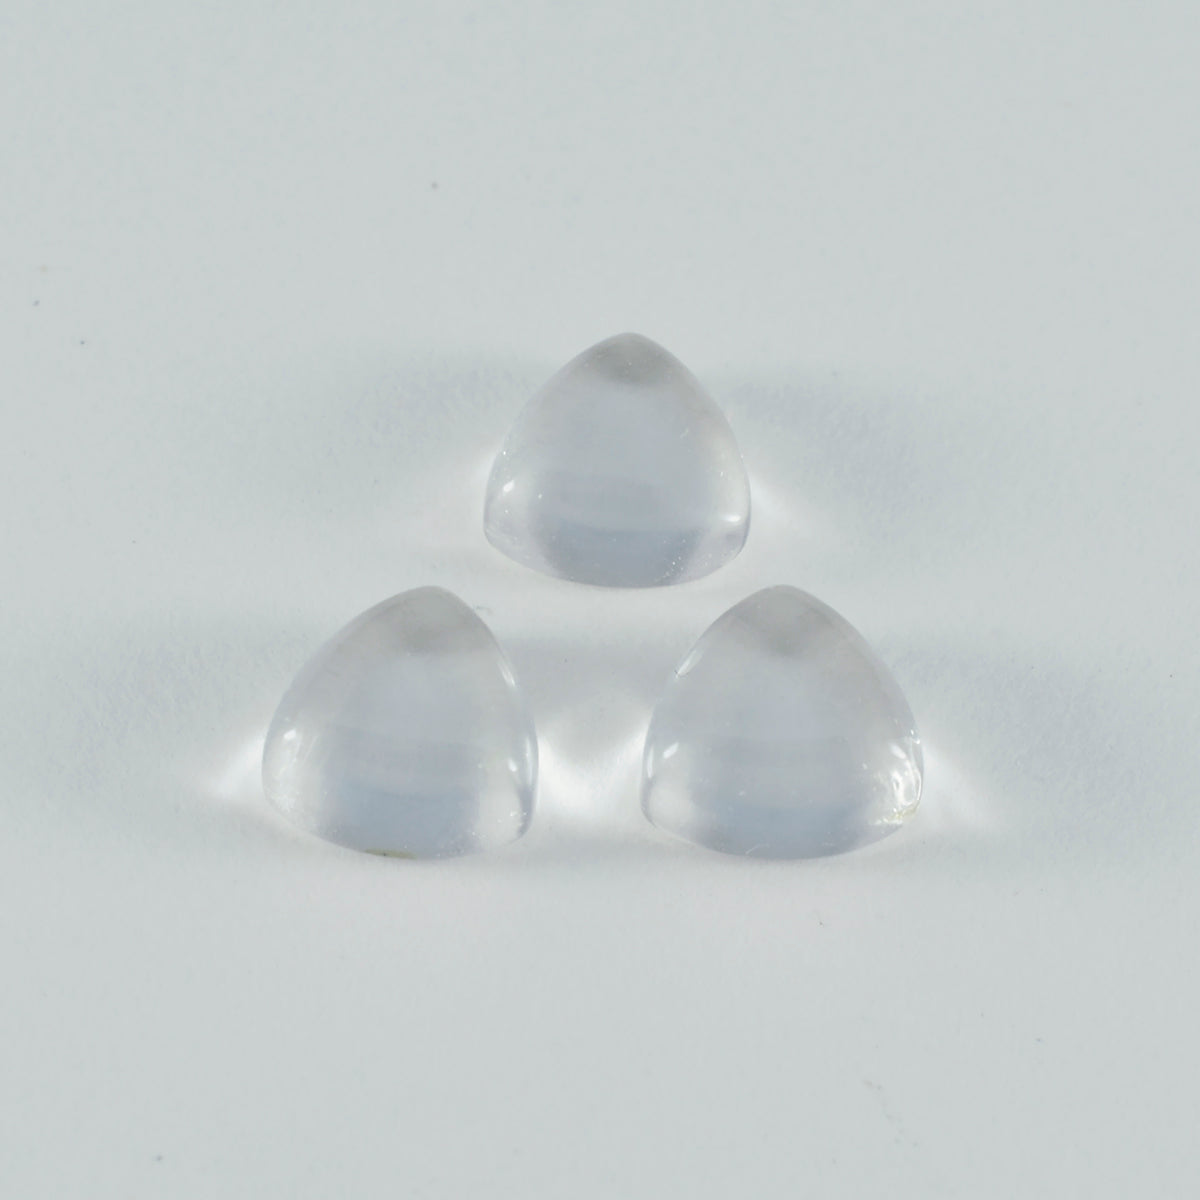 riyogems 1 шт., кабошон из белого кристалла кварца, 13x13 мм, форма триллиона, удивительное качество, свободный драгоценный камень